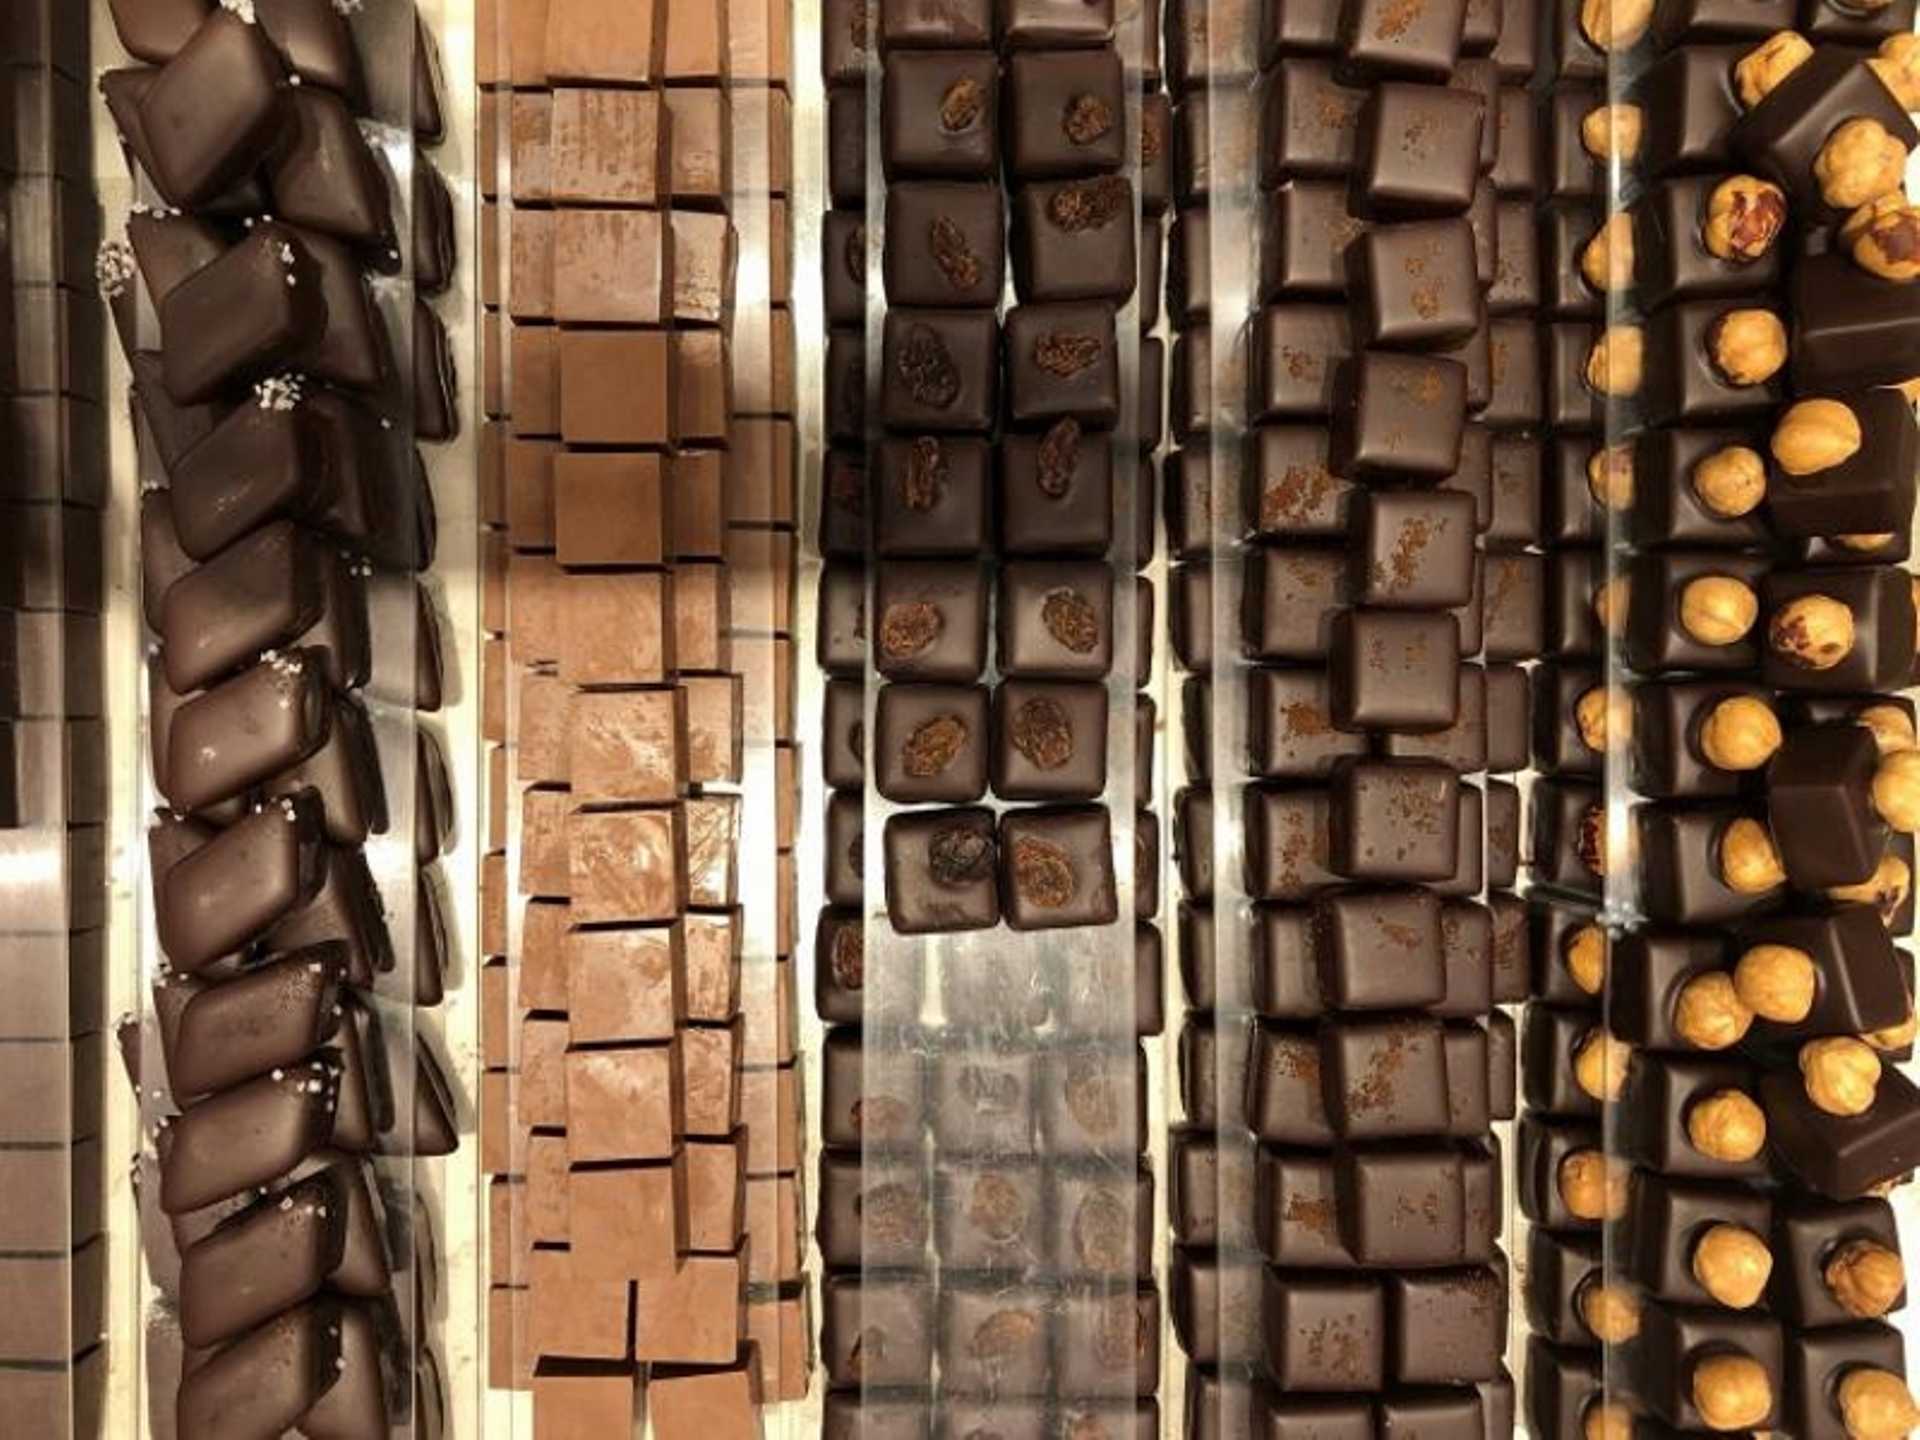 Chocolate Tasting in Venice